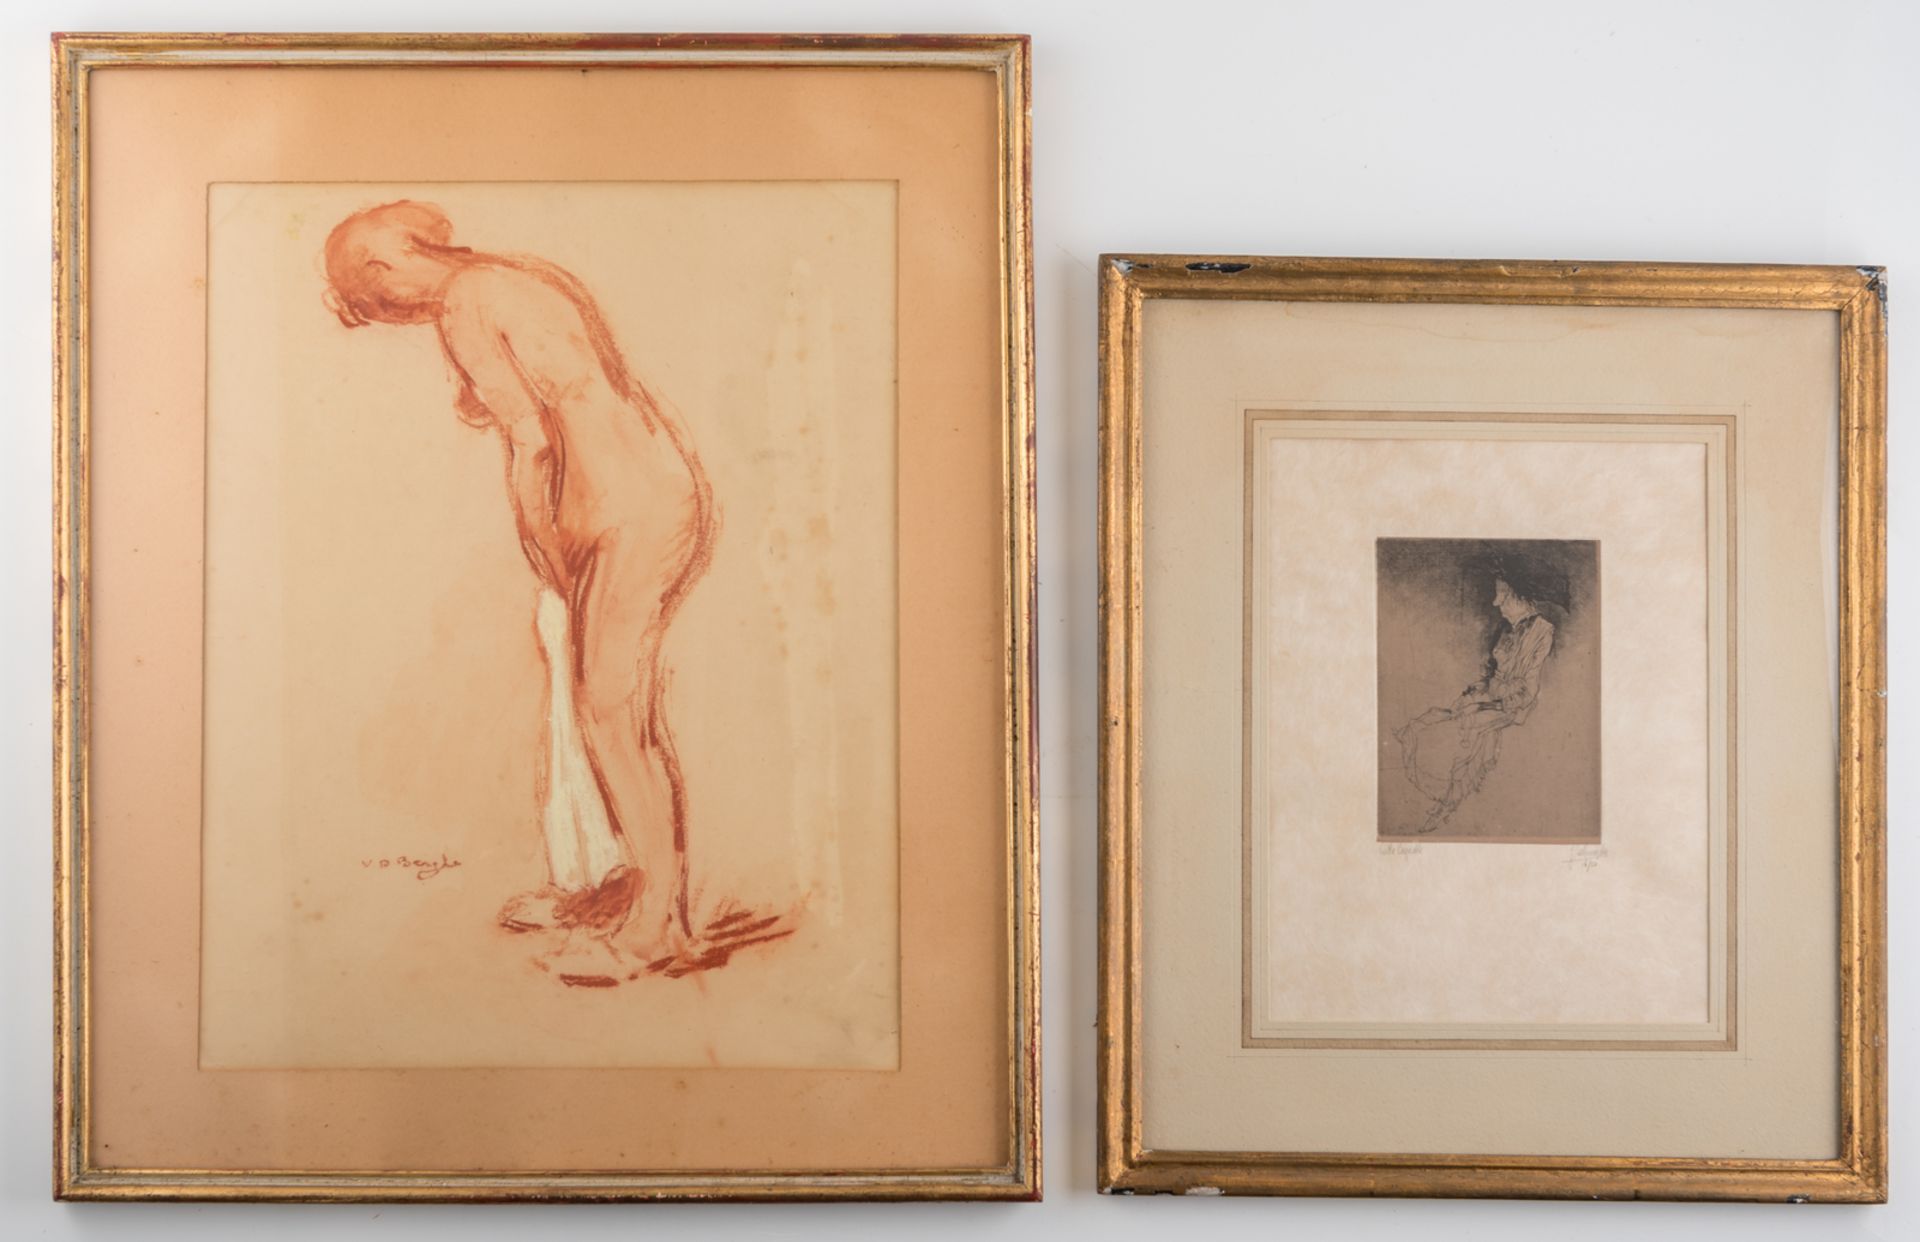 De Bruycker J., 'Vieille coquette', etching, 16/50, 12 x 16,5 cm; added Van Den Berghe R., a - Image 2 of 6